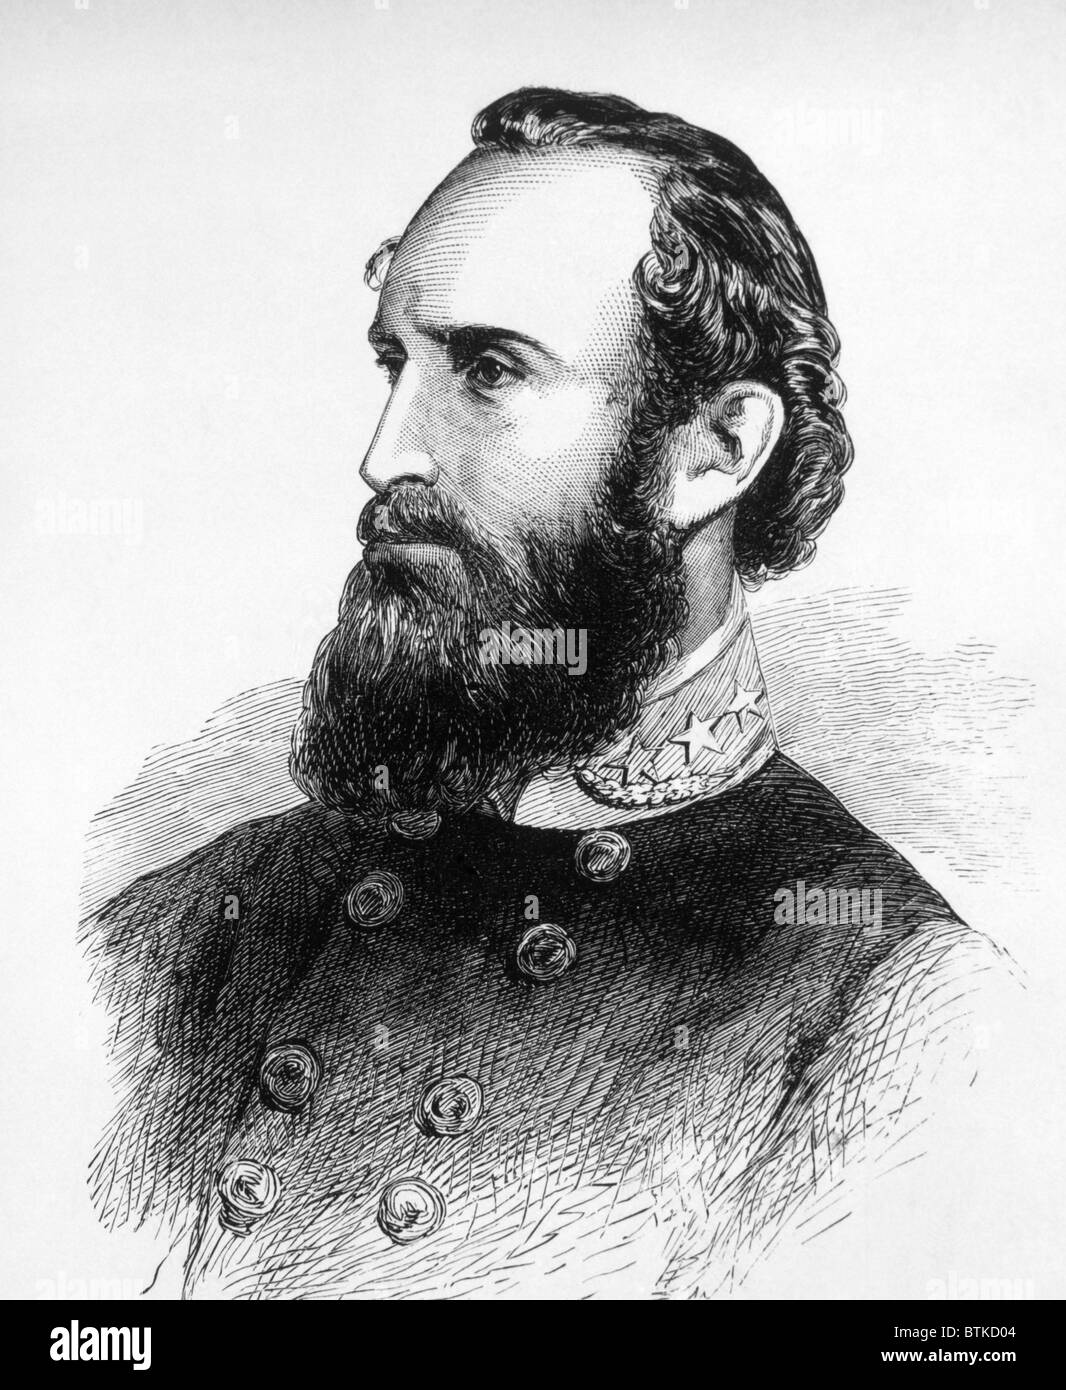 Thomas J. "Stonewall" Jackson (1824-1863), General der Konföderierten während des Bürgerkrieges Stockfoto